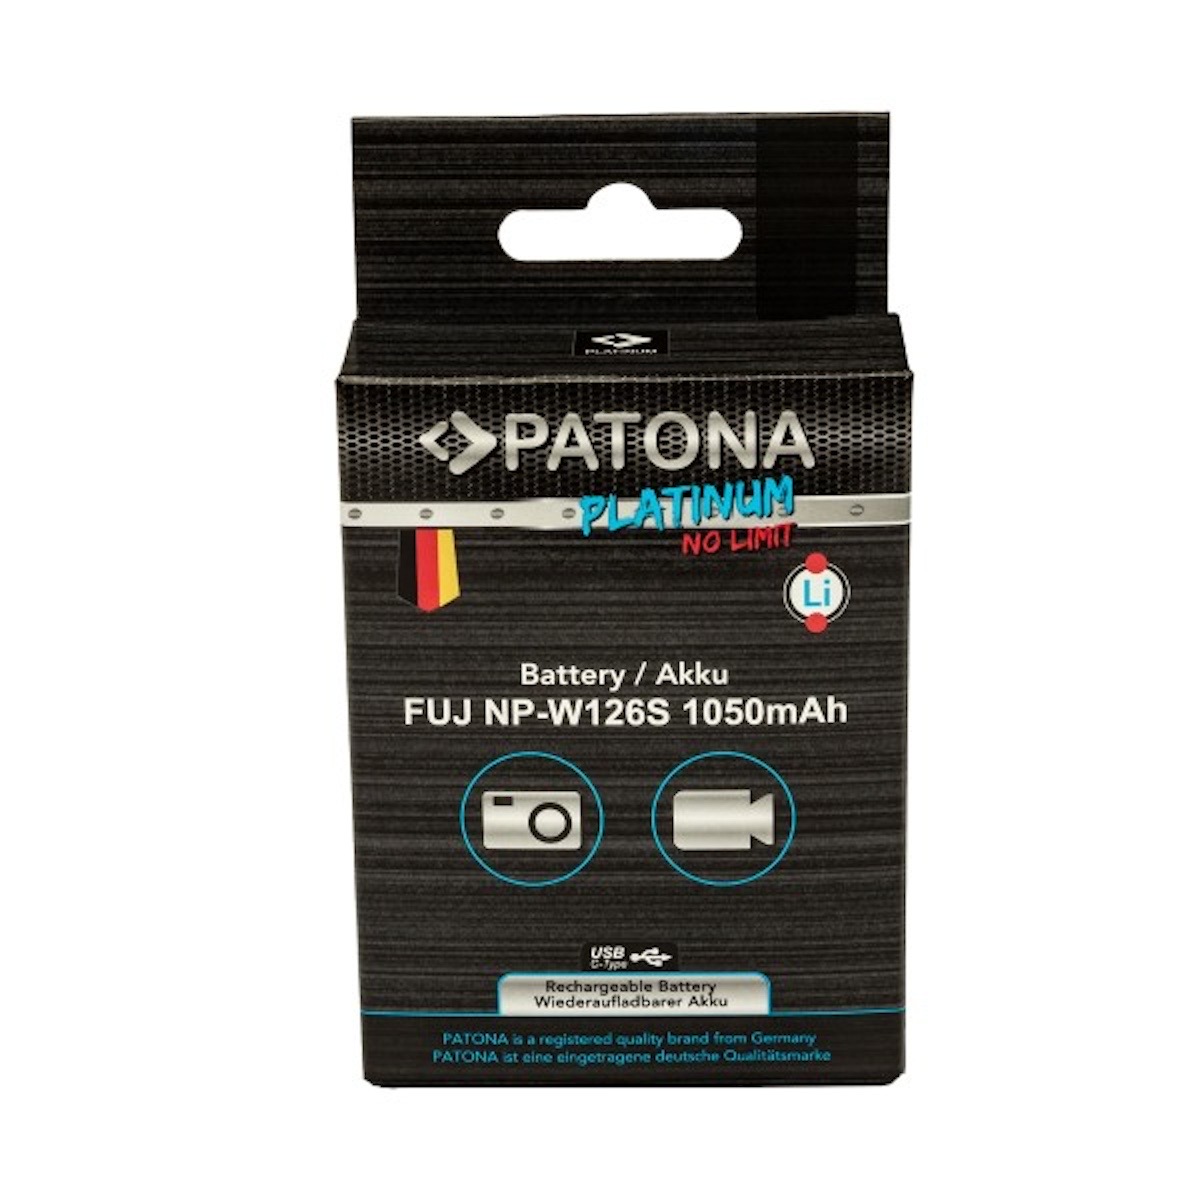 Patona Platinum Akku mit USB-C Input f. Fuji NP-W126S